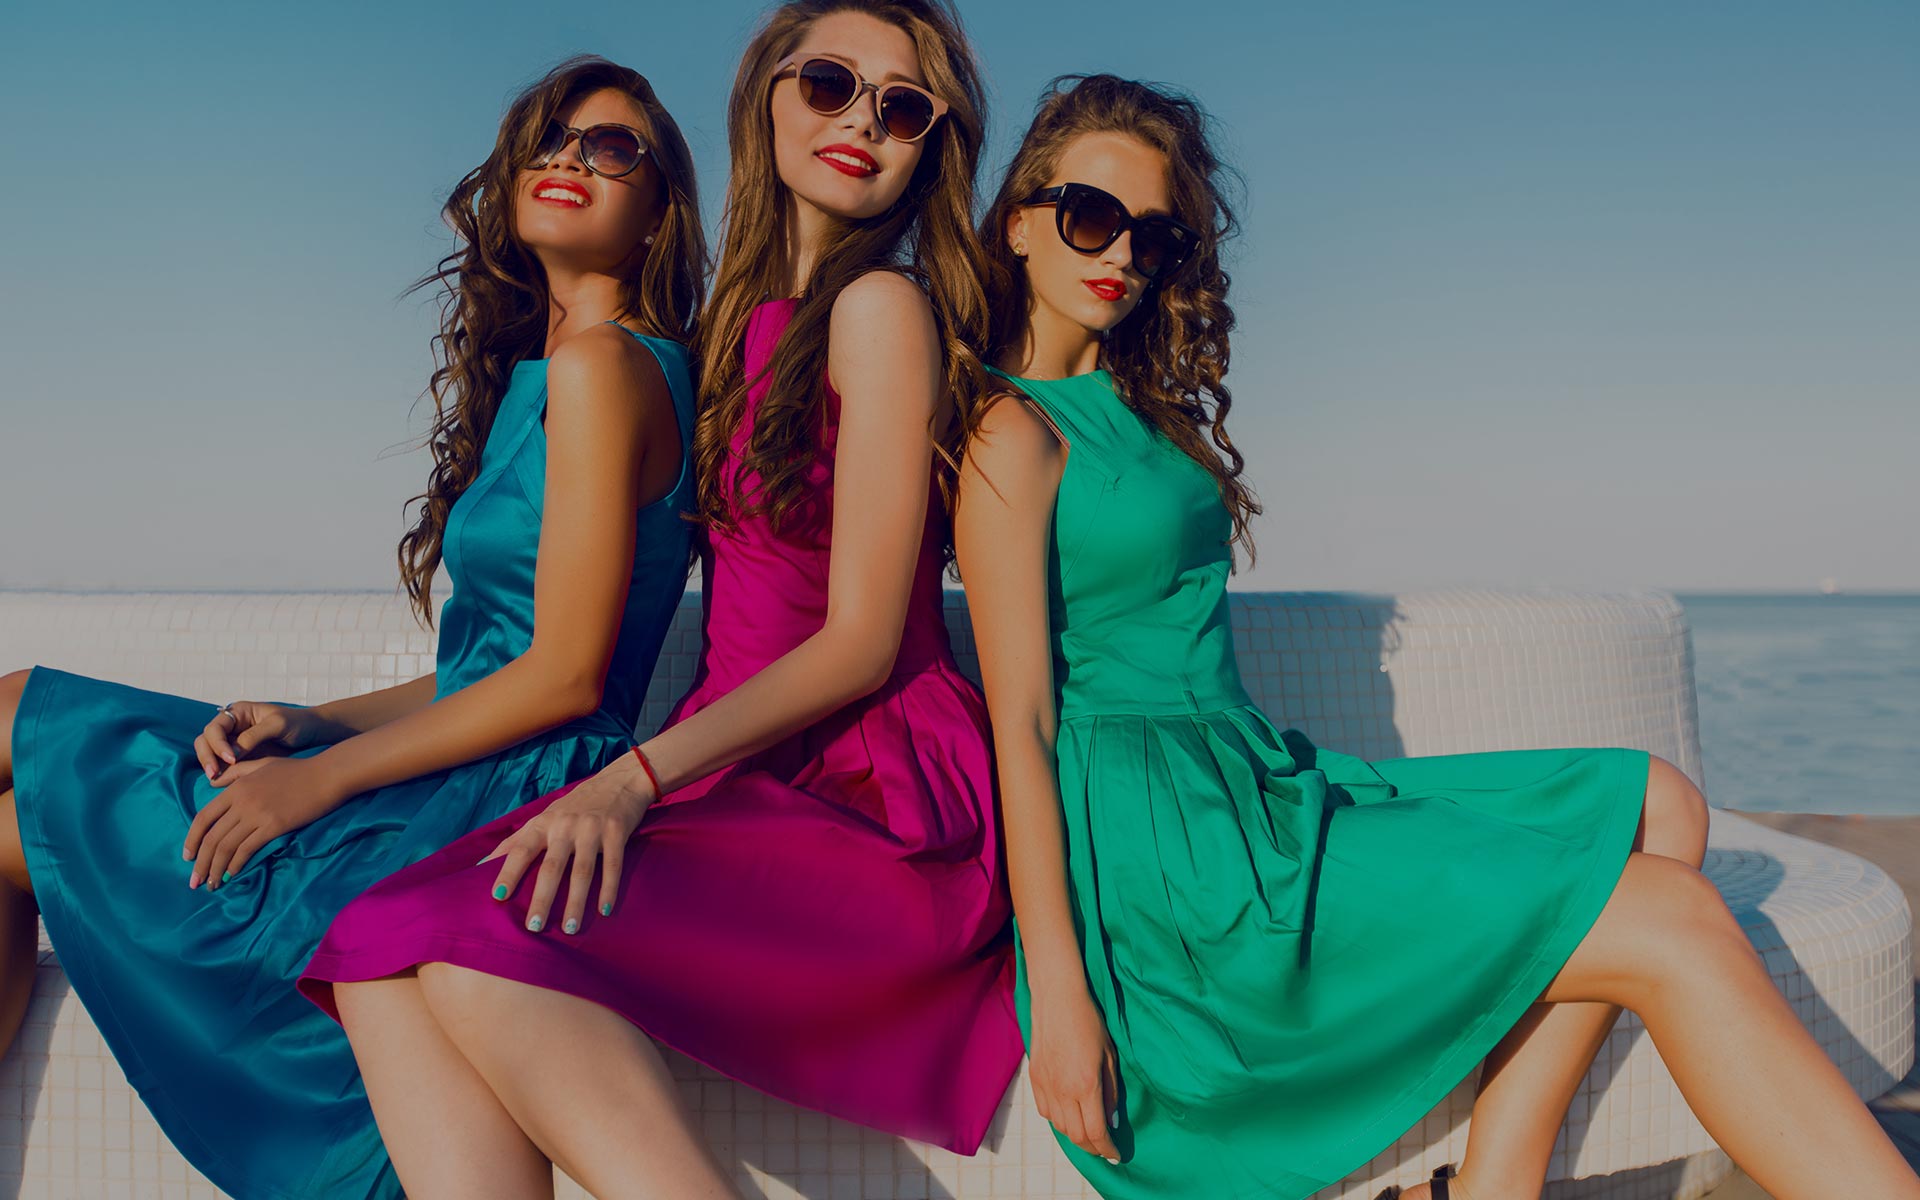 Three women. Модные подруги. Три девушки в платьях. Девушки в ярких платьях. Несколько девушек в платьях.